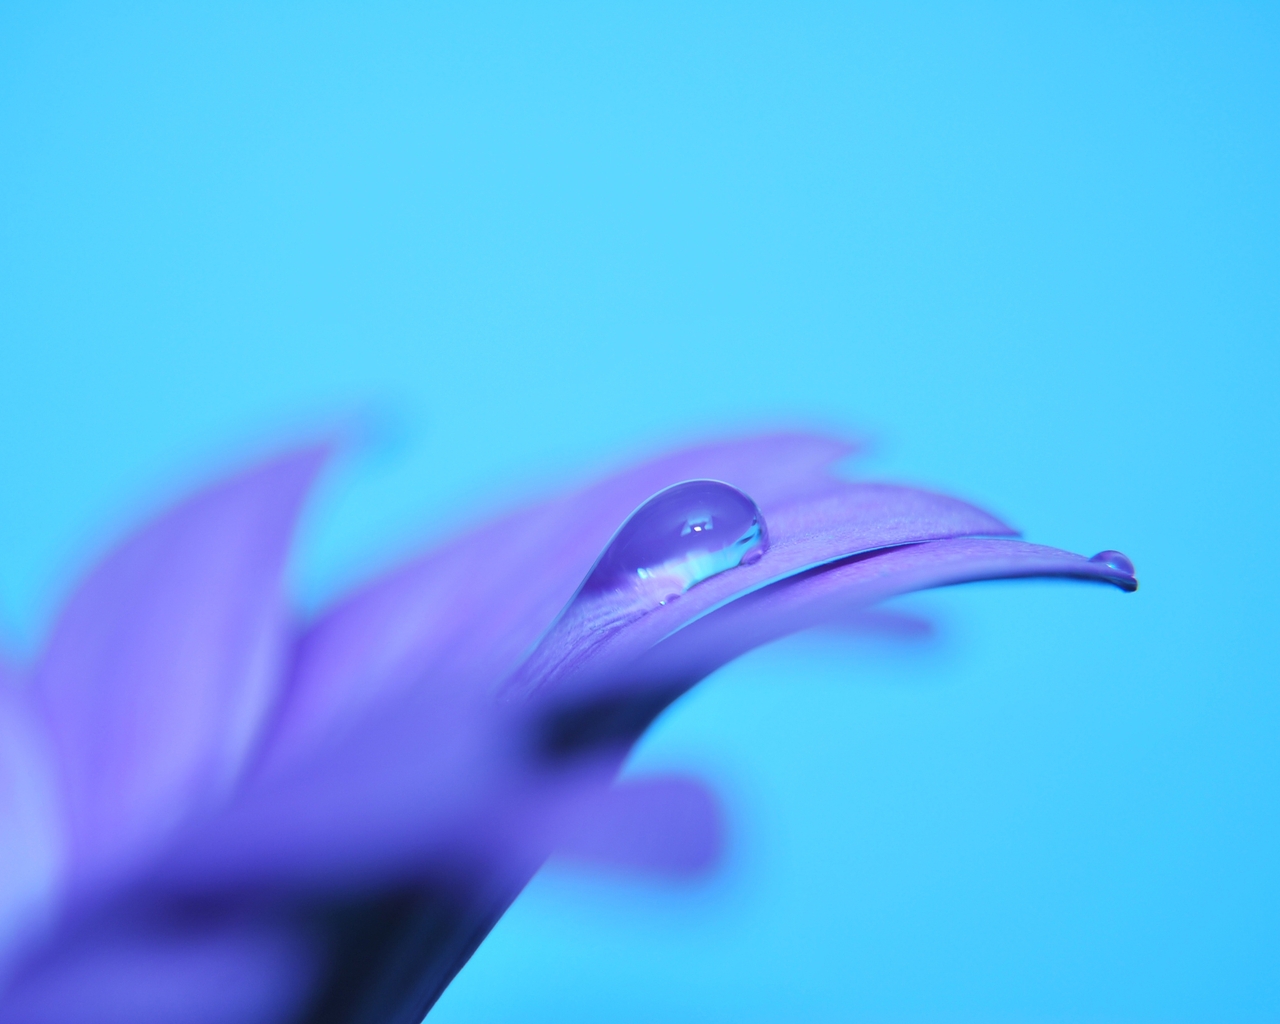 Картинка: Цветок, сиреневый, фиолетовый, капля, голубой фон